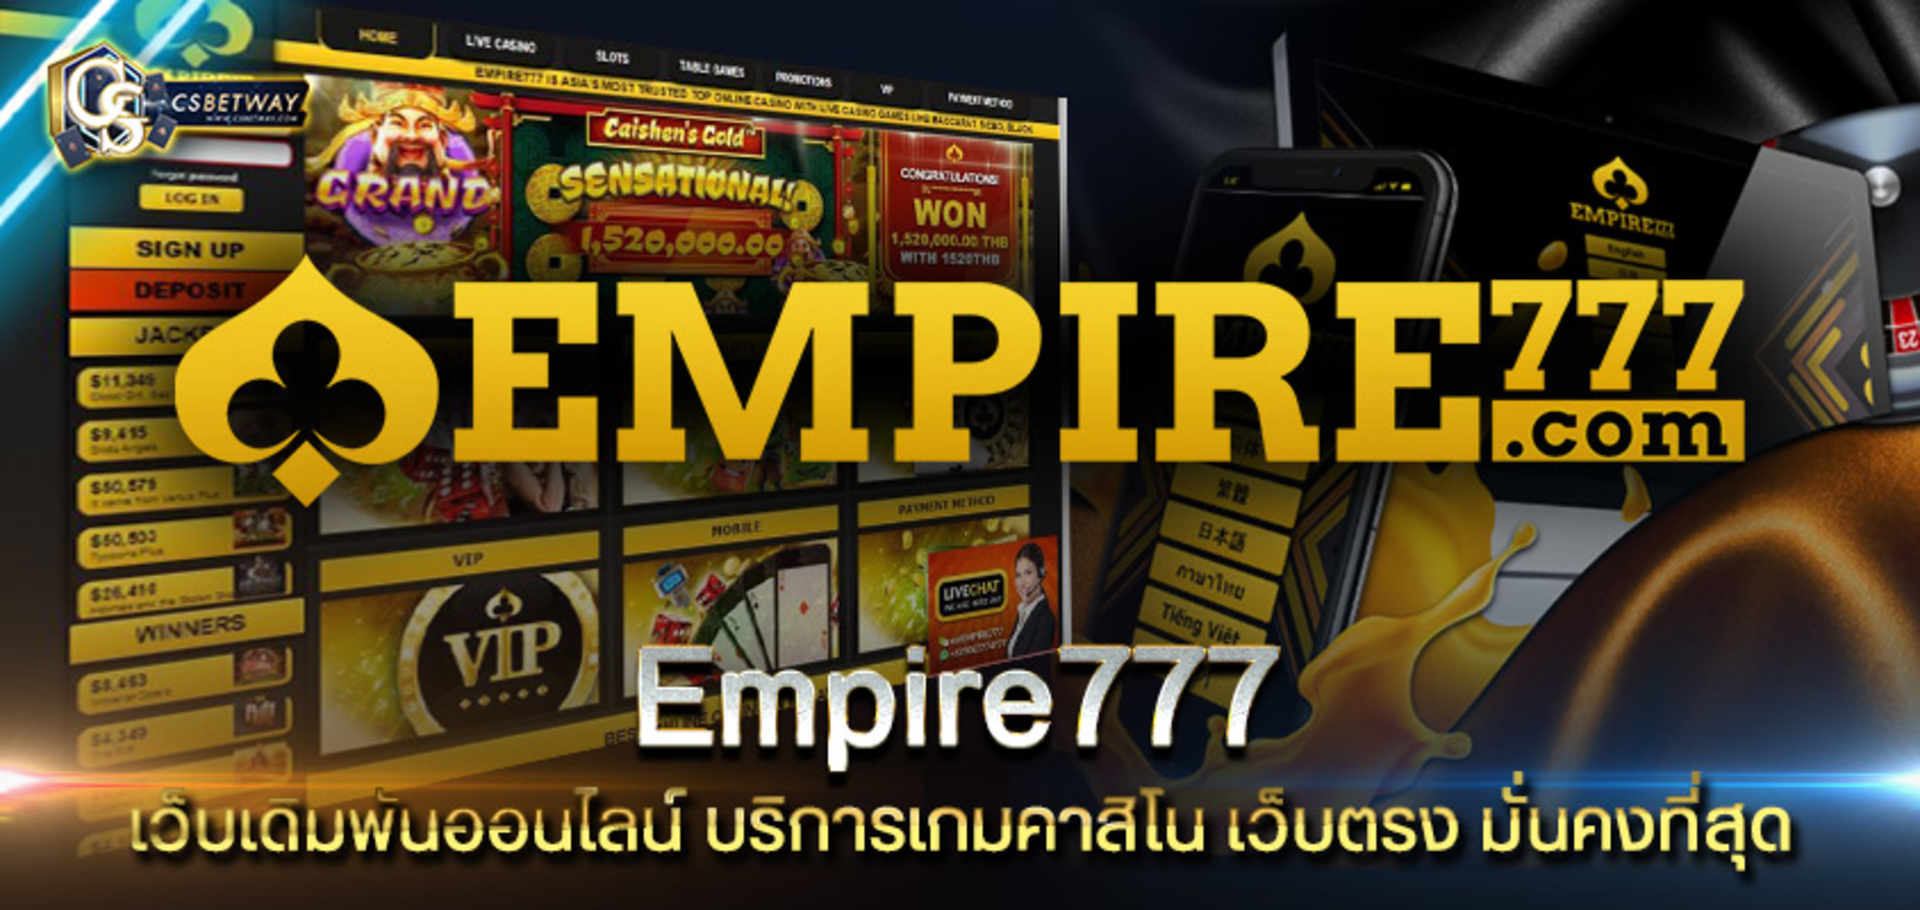 Empire777 เว็บเดิมพันออนไลน์ บริการเกมคาสิโน Empire777 เว็บตรง มั่นคงที่สุด